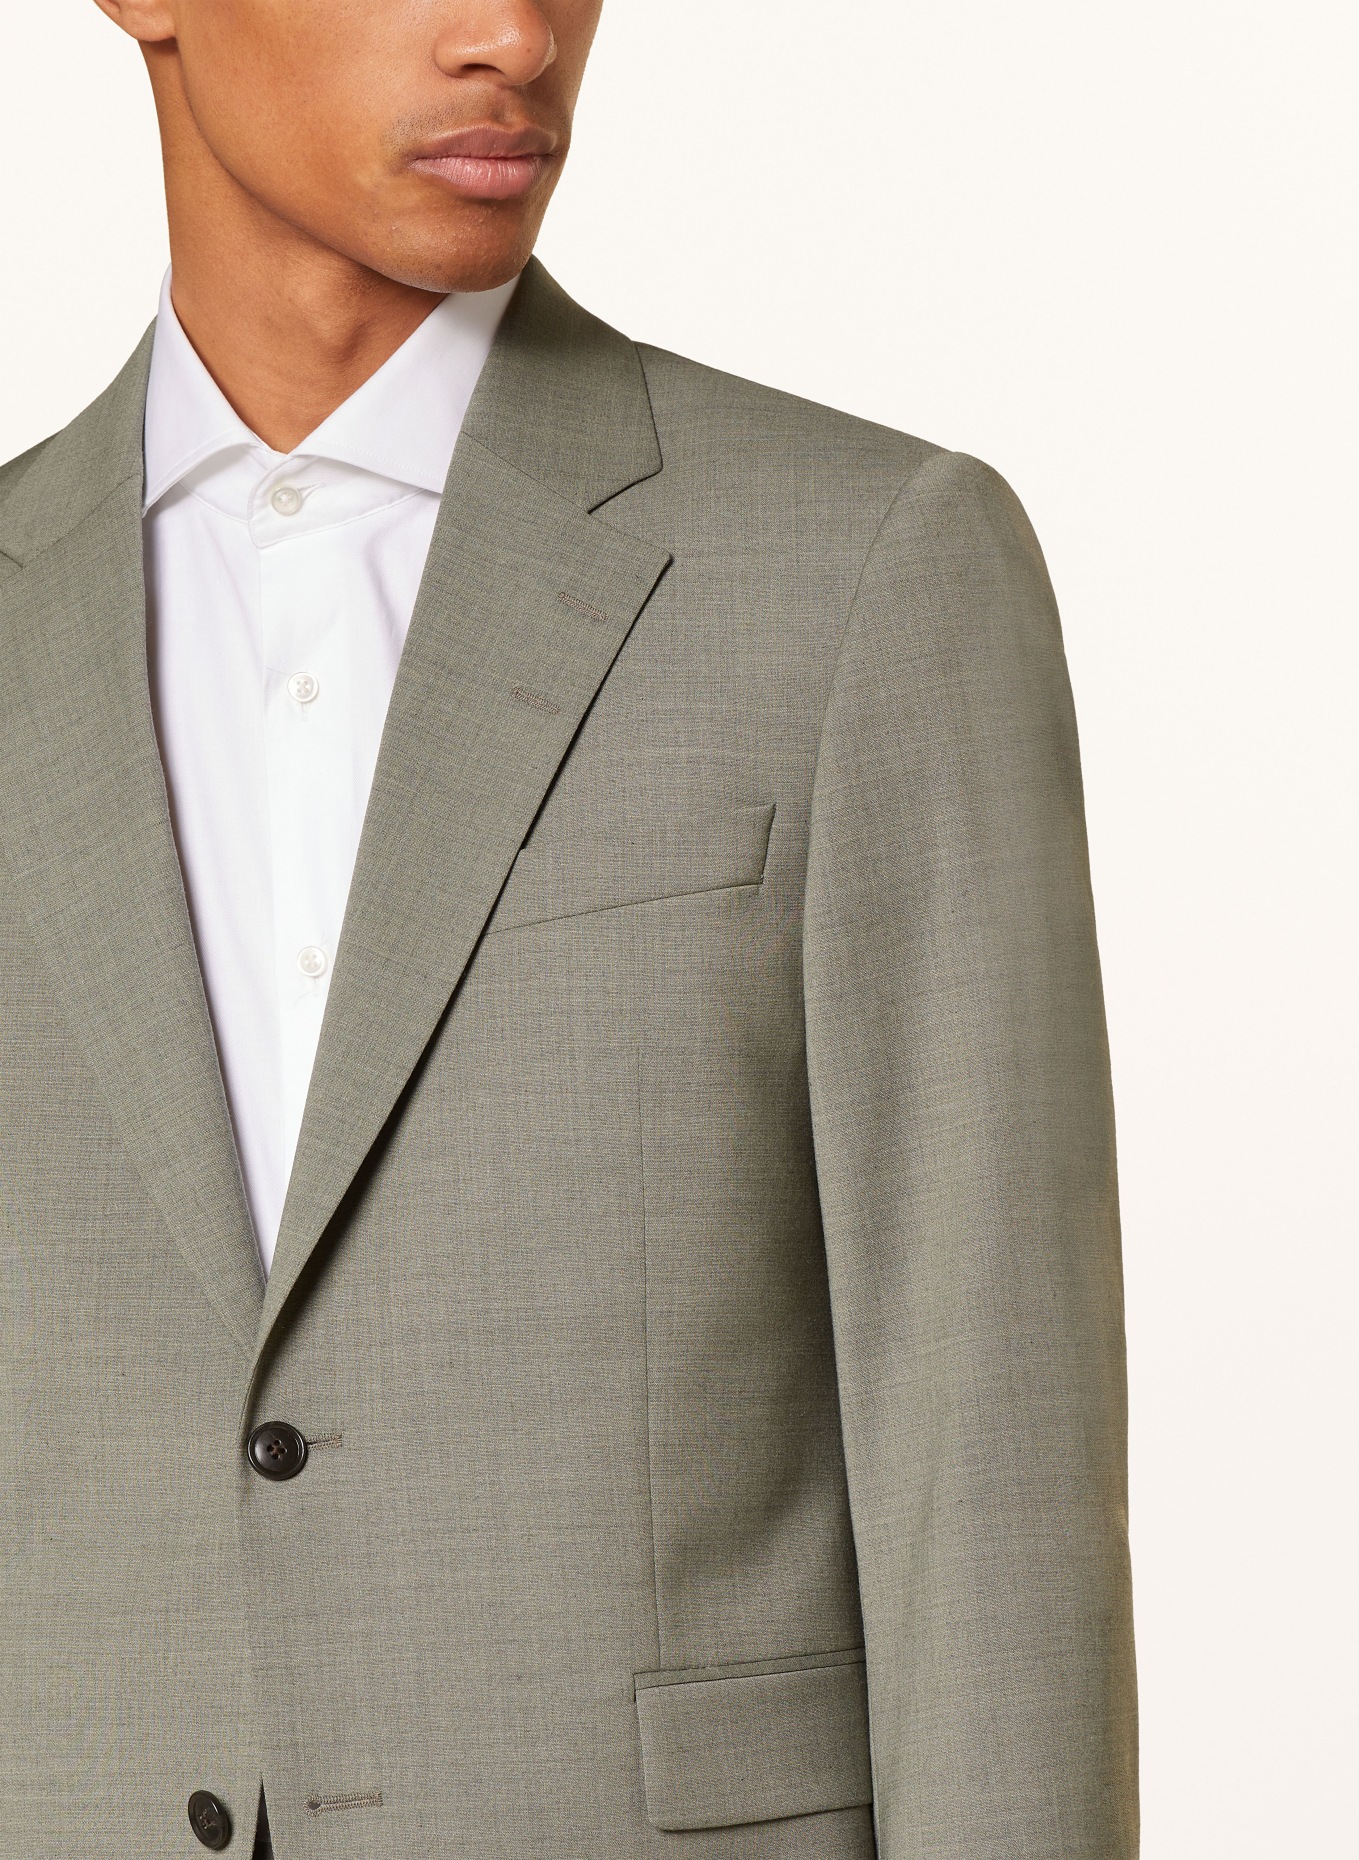 TIGER OF SWEDEN Suit jacket JUSTINS regular fit, Color: 07B Shadow (Image 5)